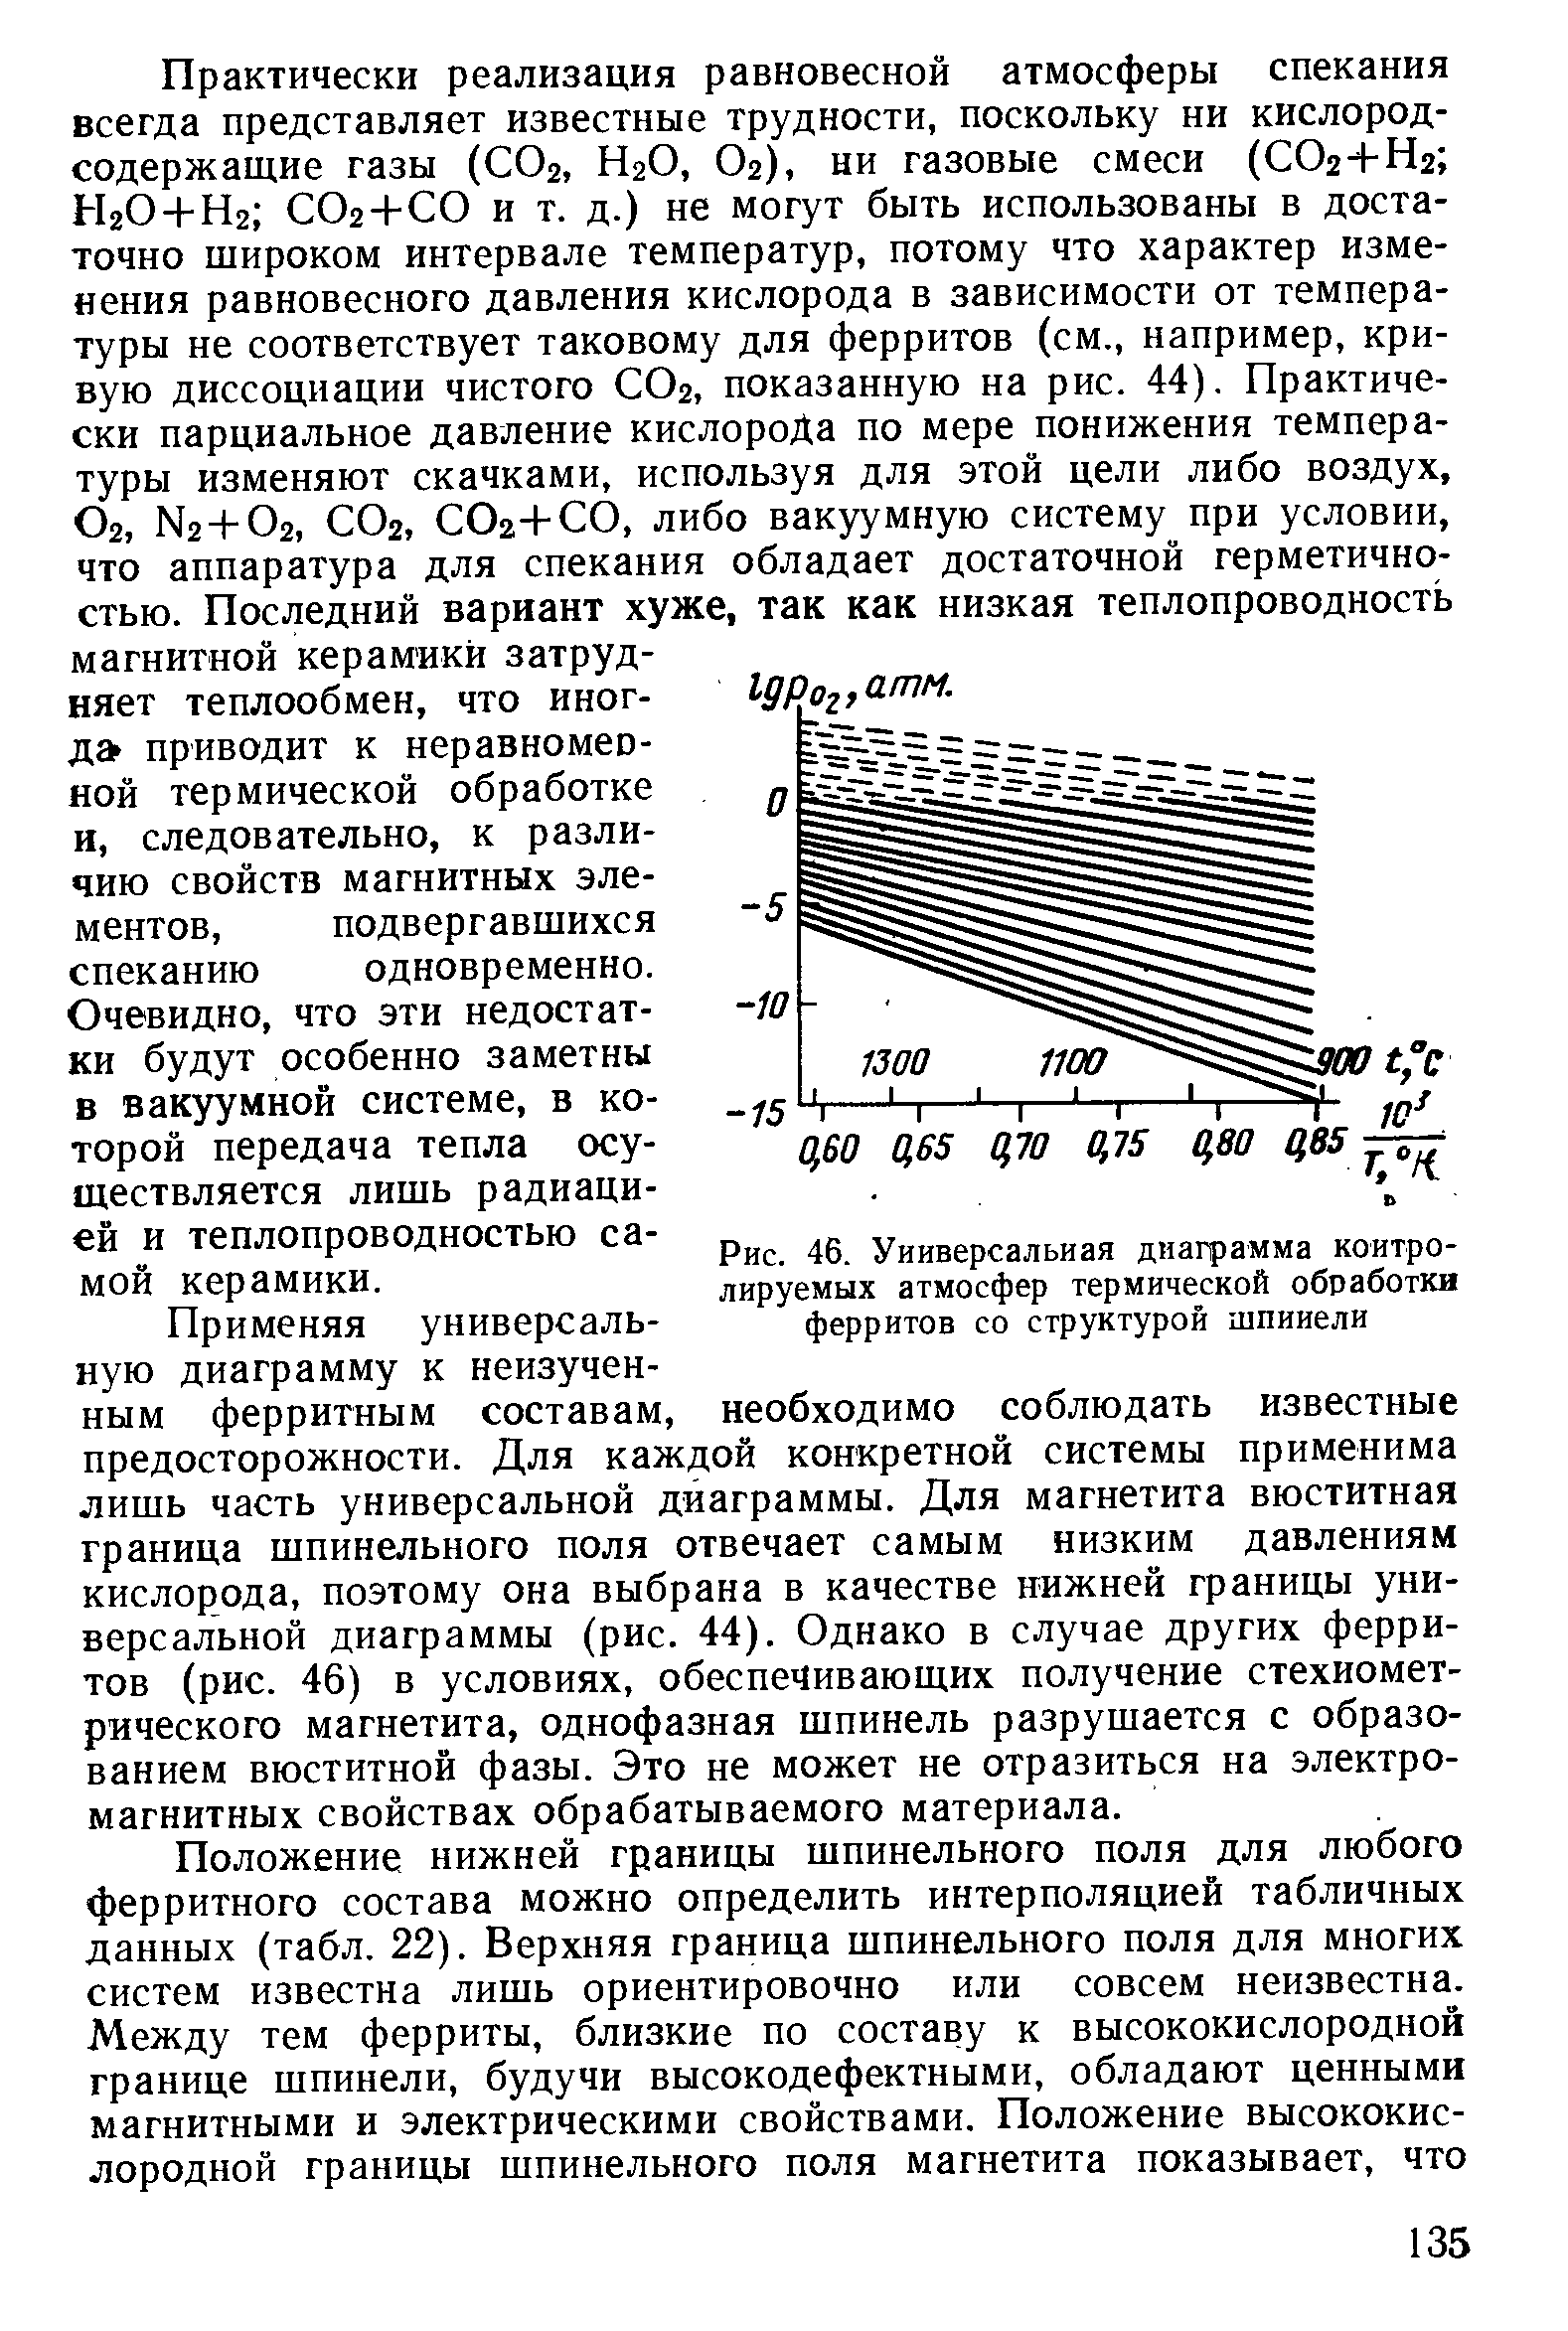 Рис. 46. Универсальная диаграмма контролируемых <a href="/info/454890">атмосфер термической</a> обработки ферритов со структурой шпинели
